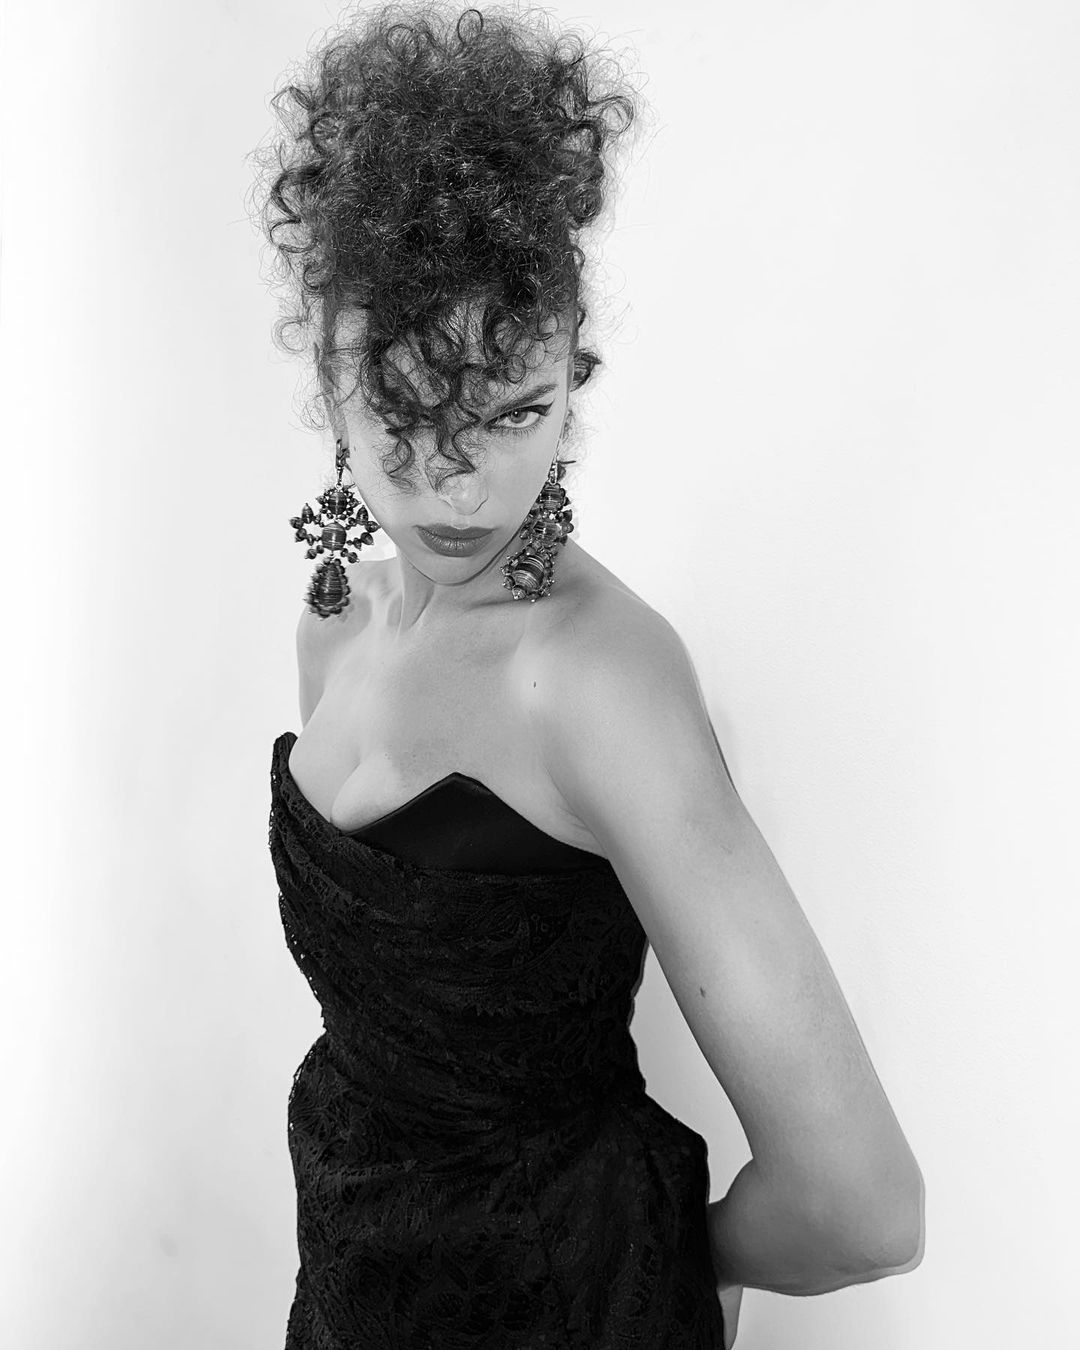 Photos n°3 : Irina Shayk Rocks Curls for Westwood!